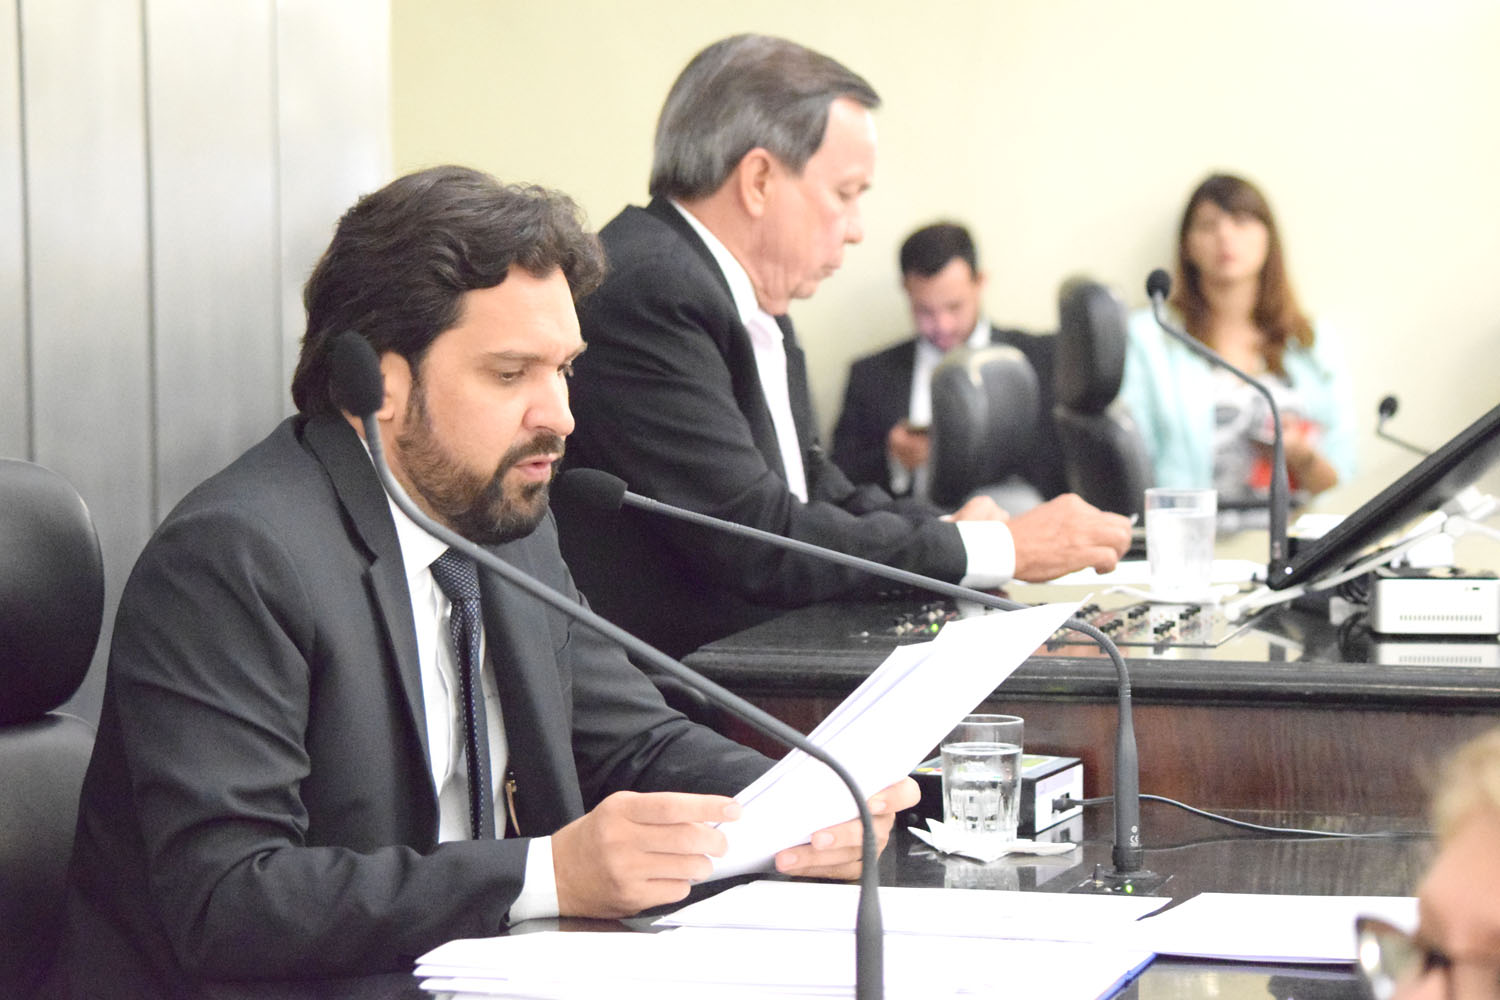 Isnaldo Bulhões e Luiz Dantas conduziram a sessão.JPG